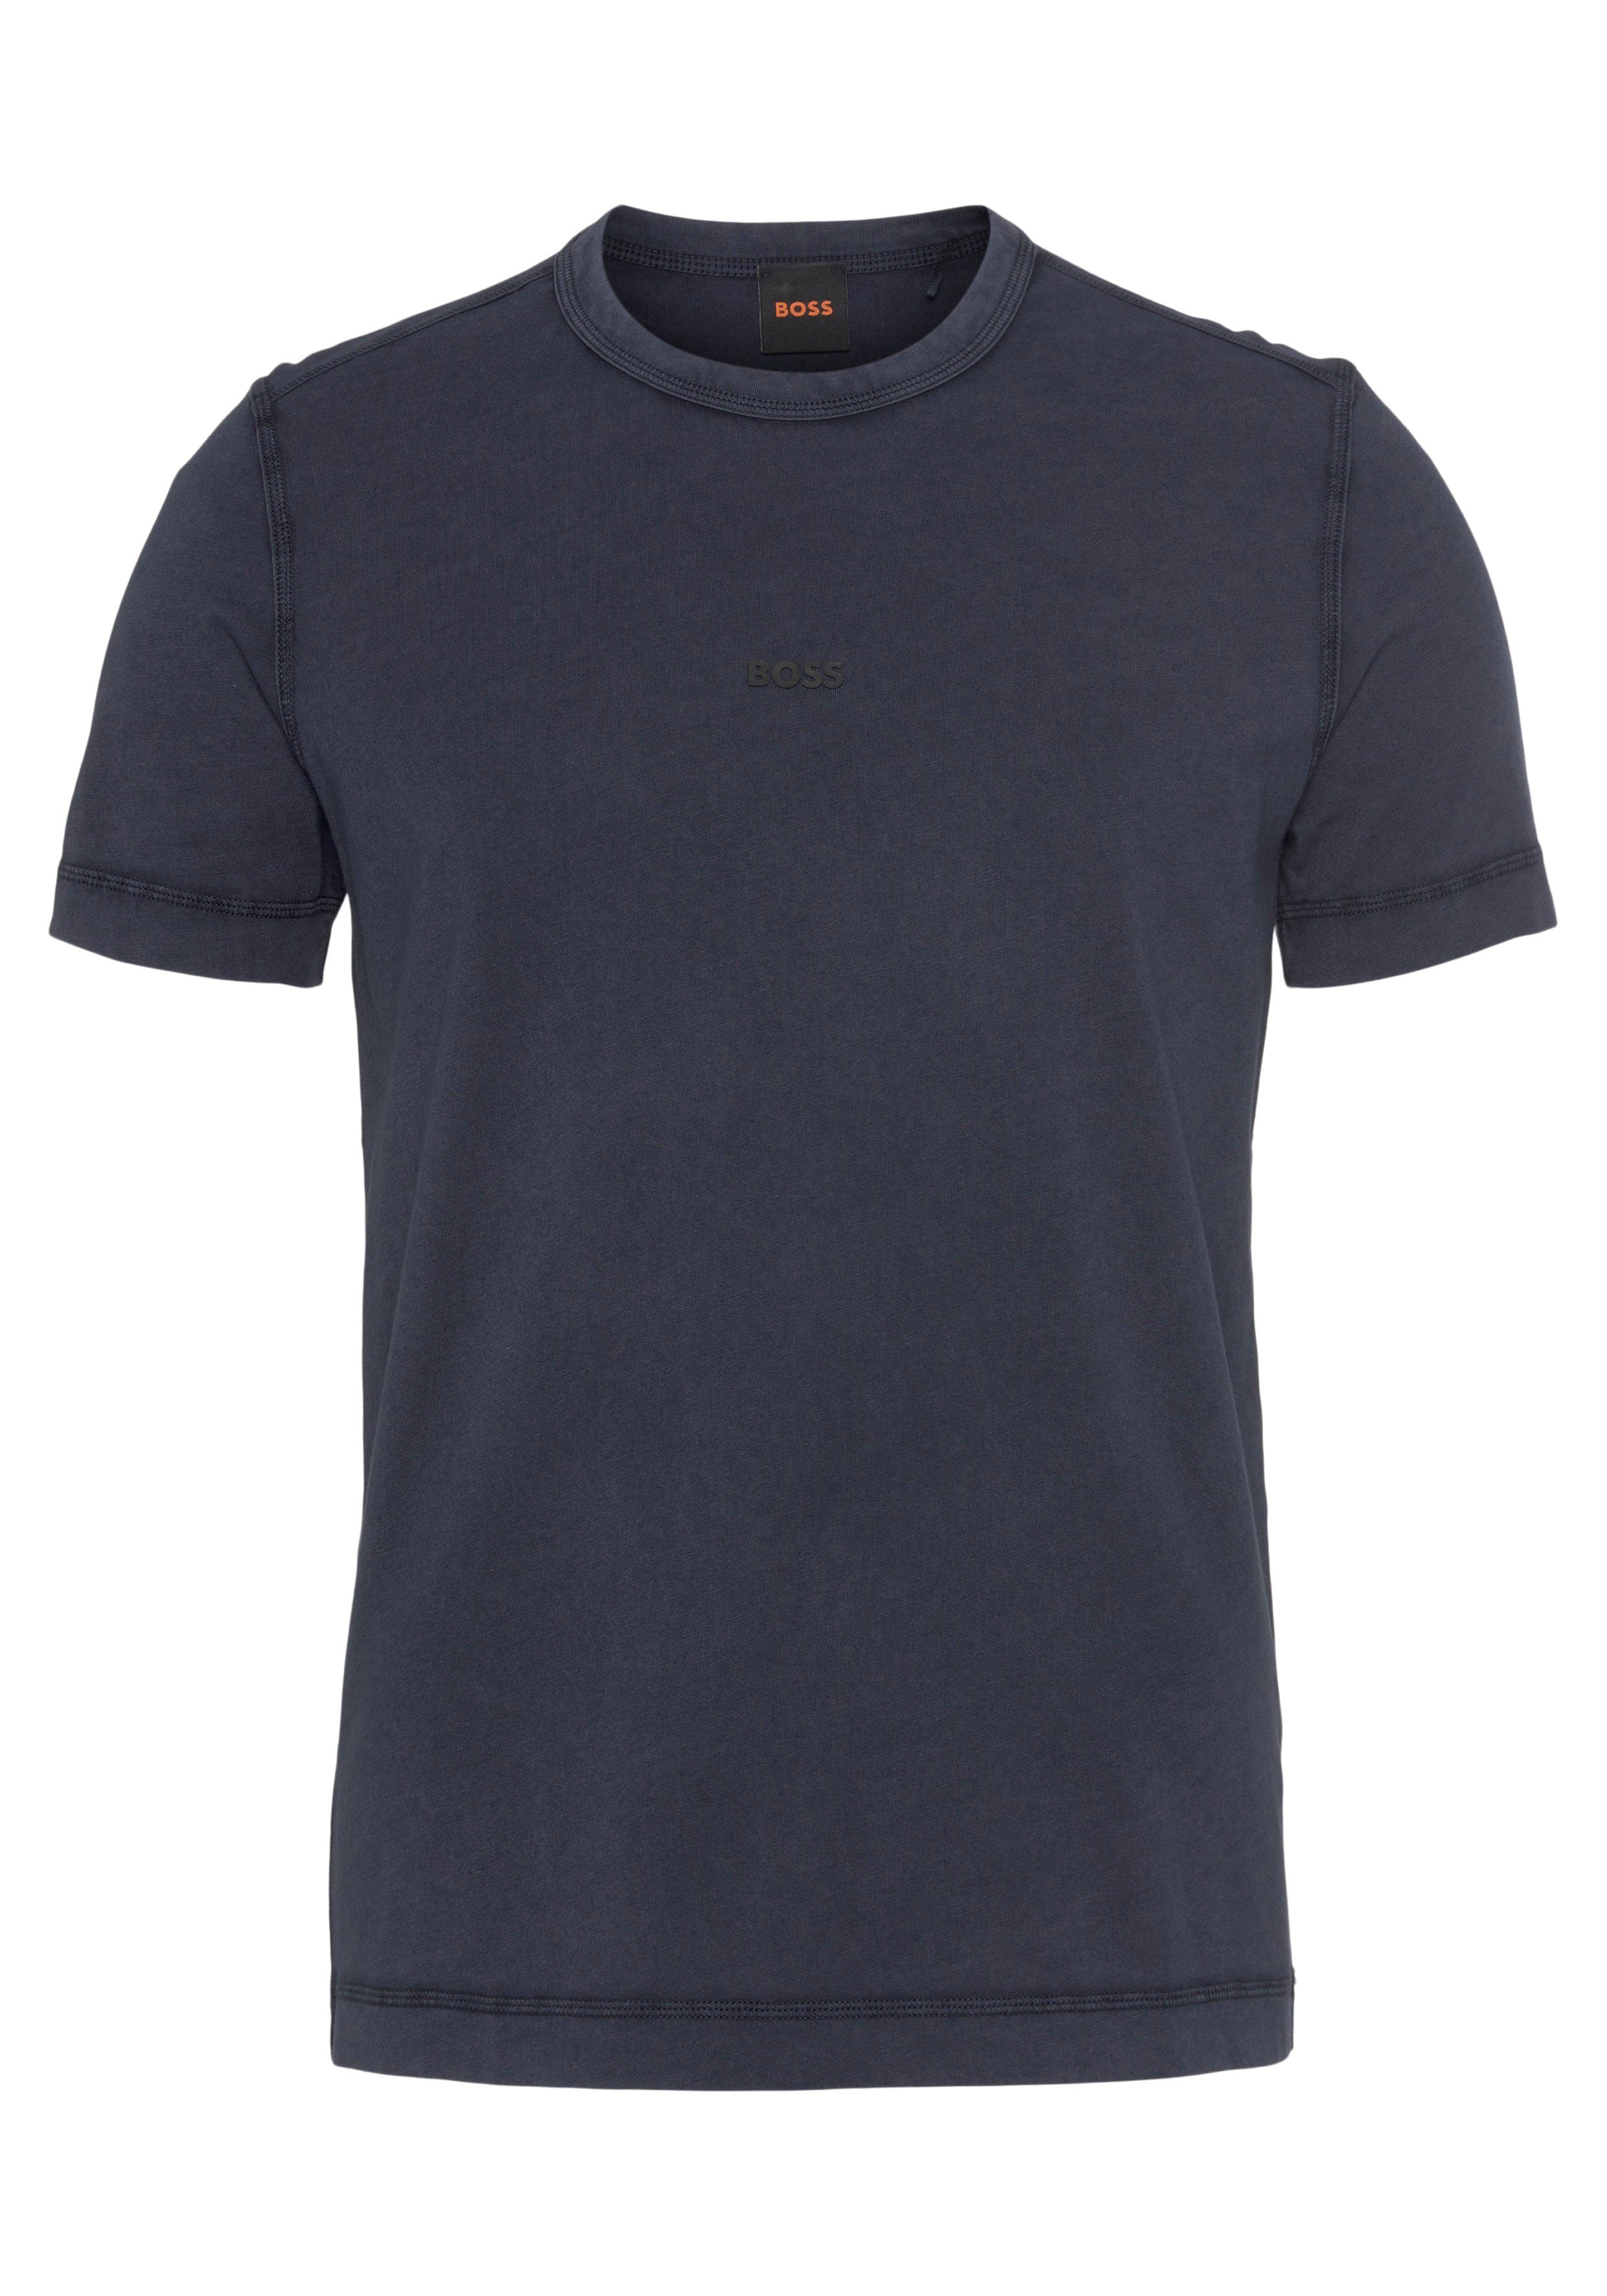 BOSS ORANGE T-Shirt Tokks BOSS blue404 ORANGE dark Markenlabel mit